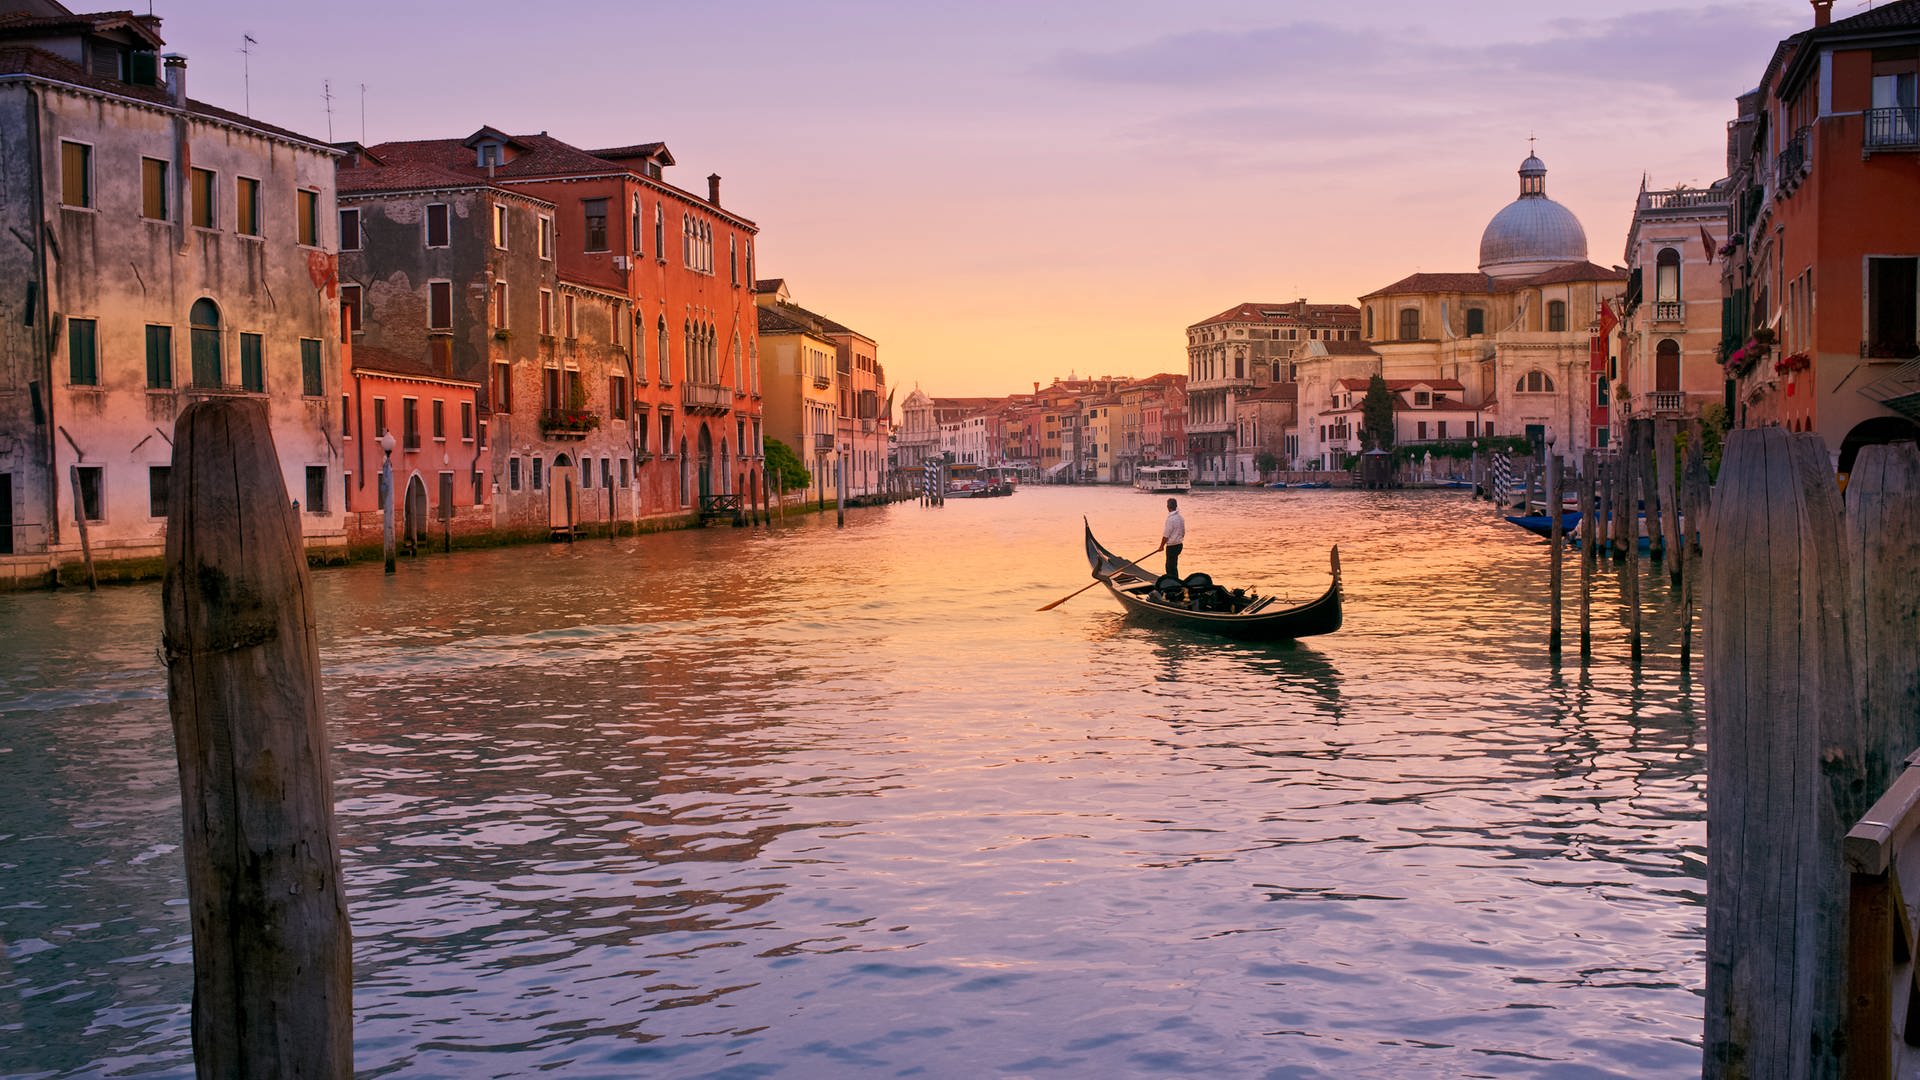 Die Kanäle in Venedig